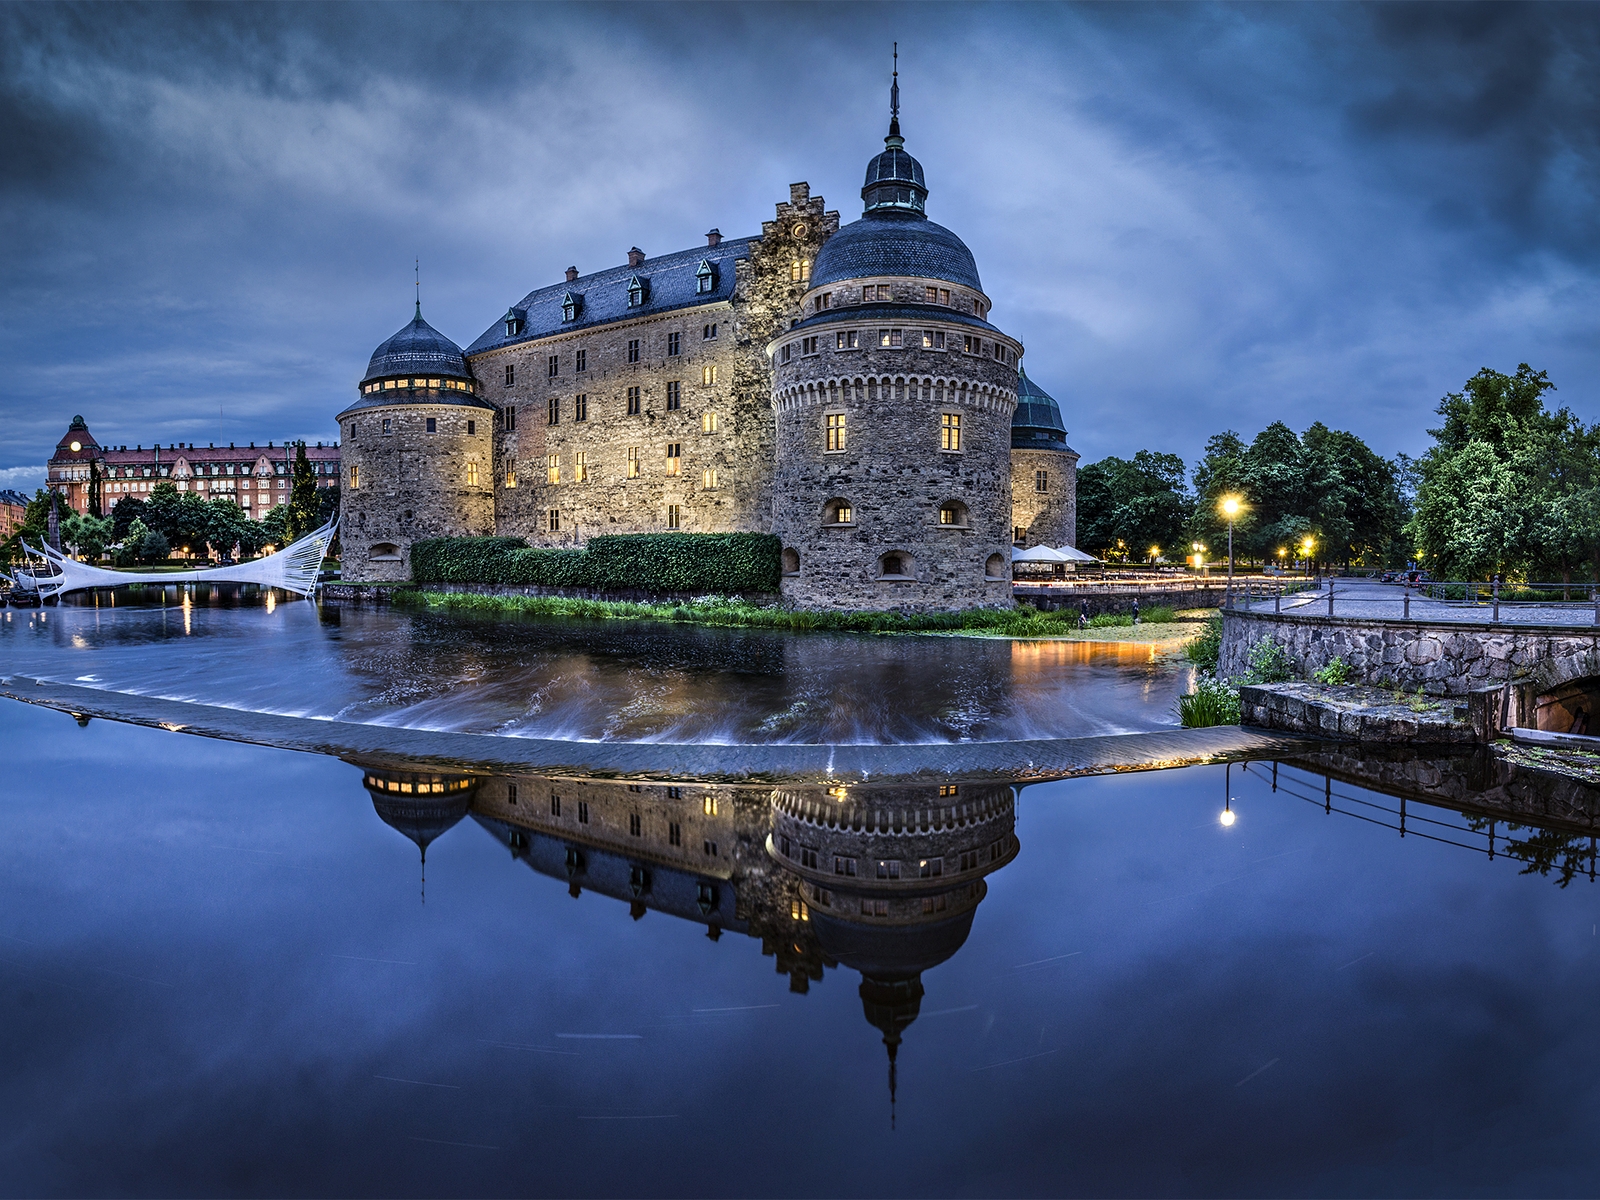 Image: Sweden, örebro castle, river, evening, lights